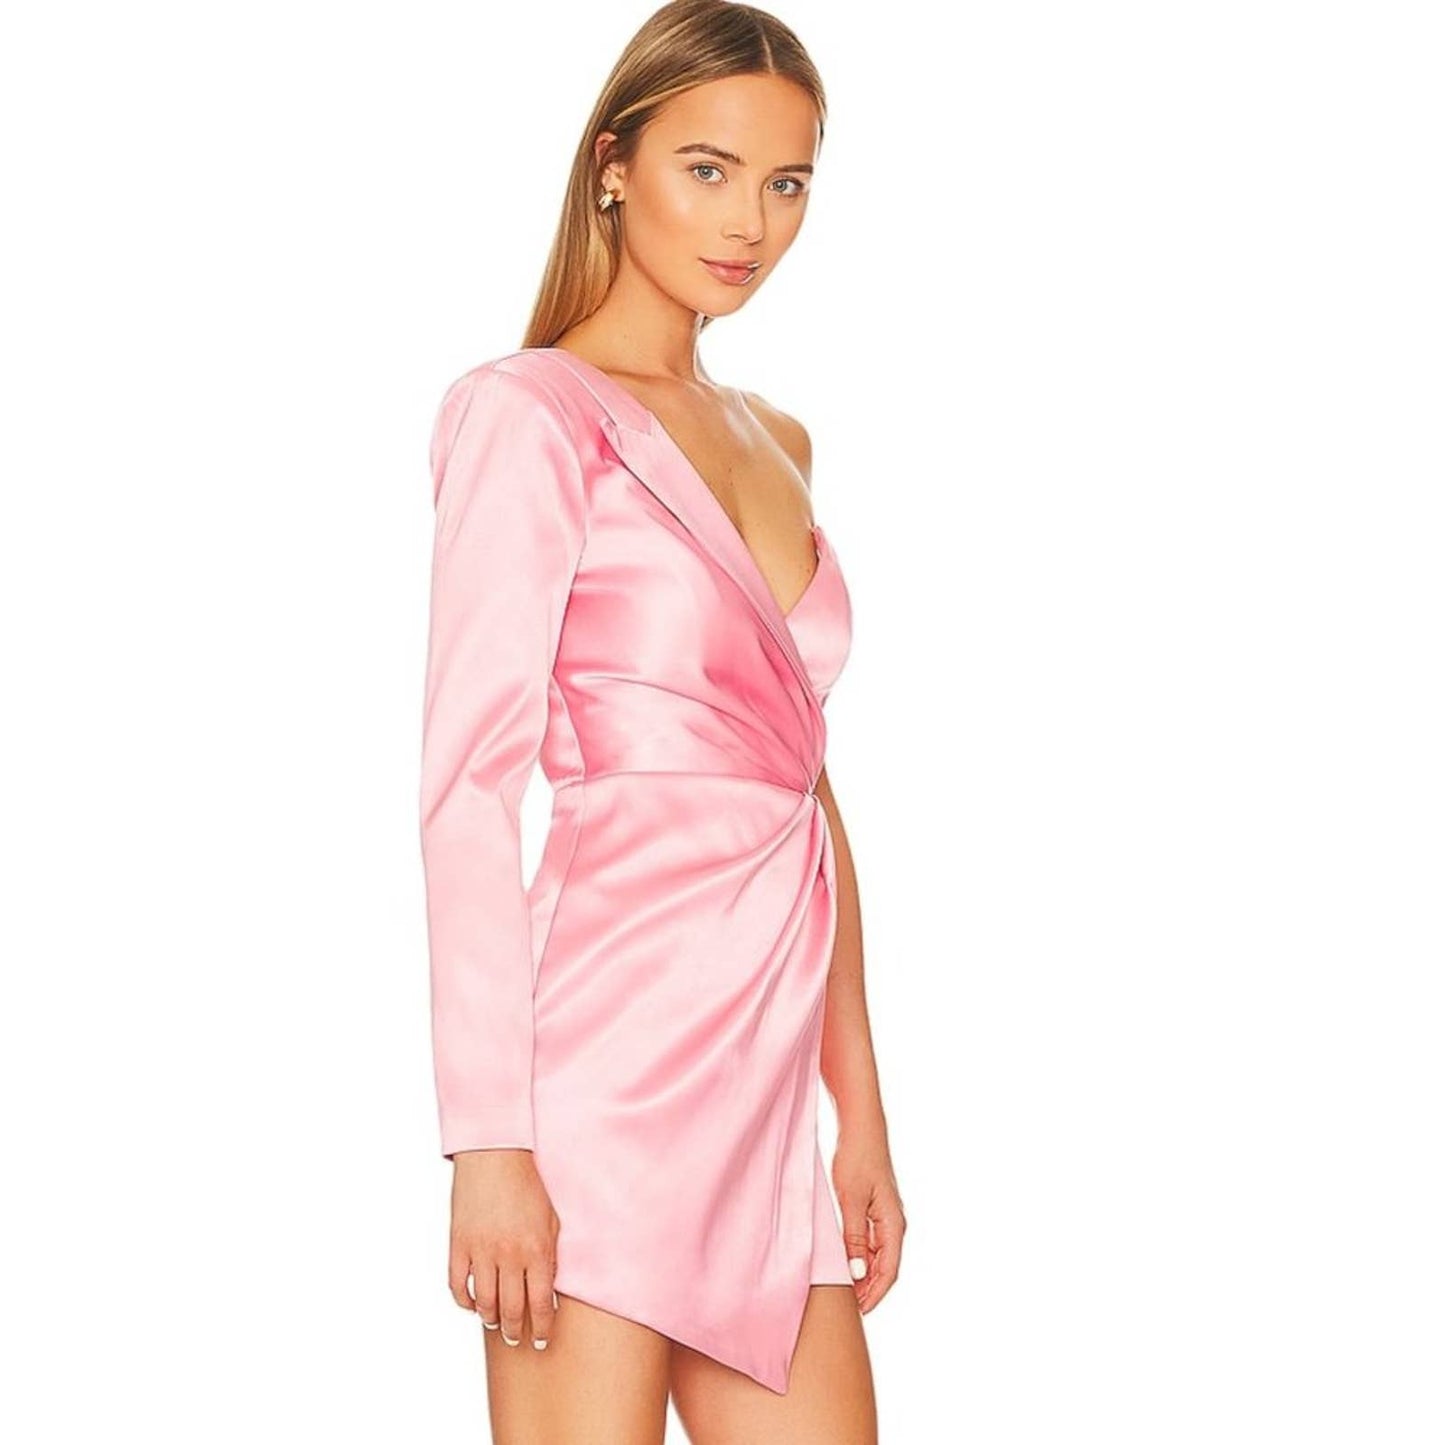 NBD Vanity Mini Dress in Light Pink NWT Size Medium